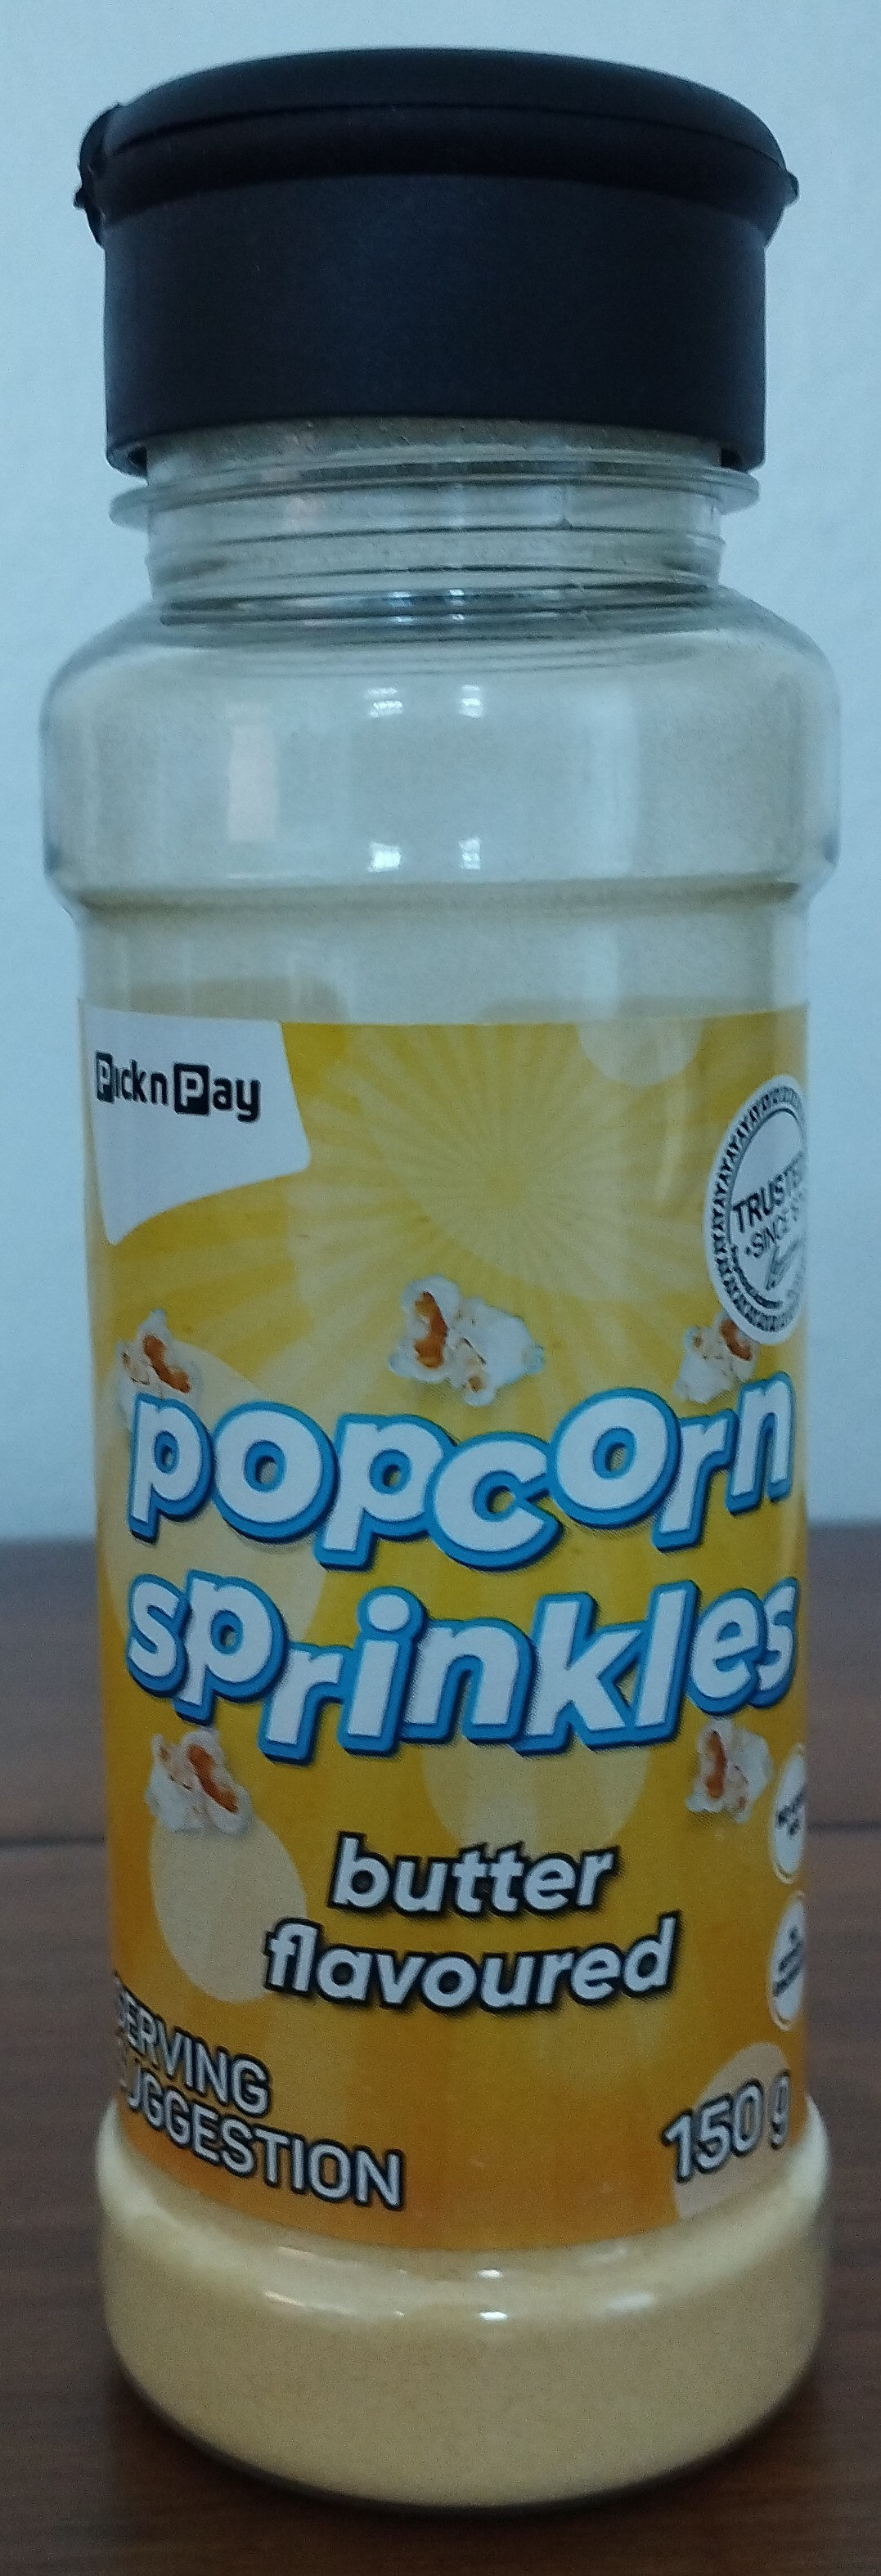 Popcorn Sprinkles - butter flavoured - Product - en